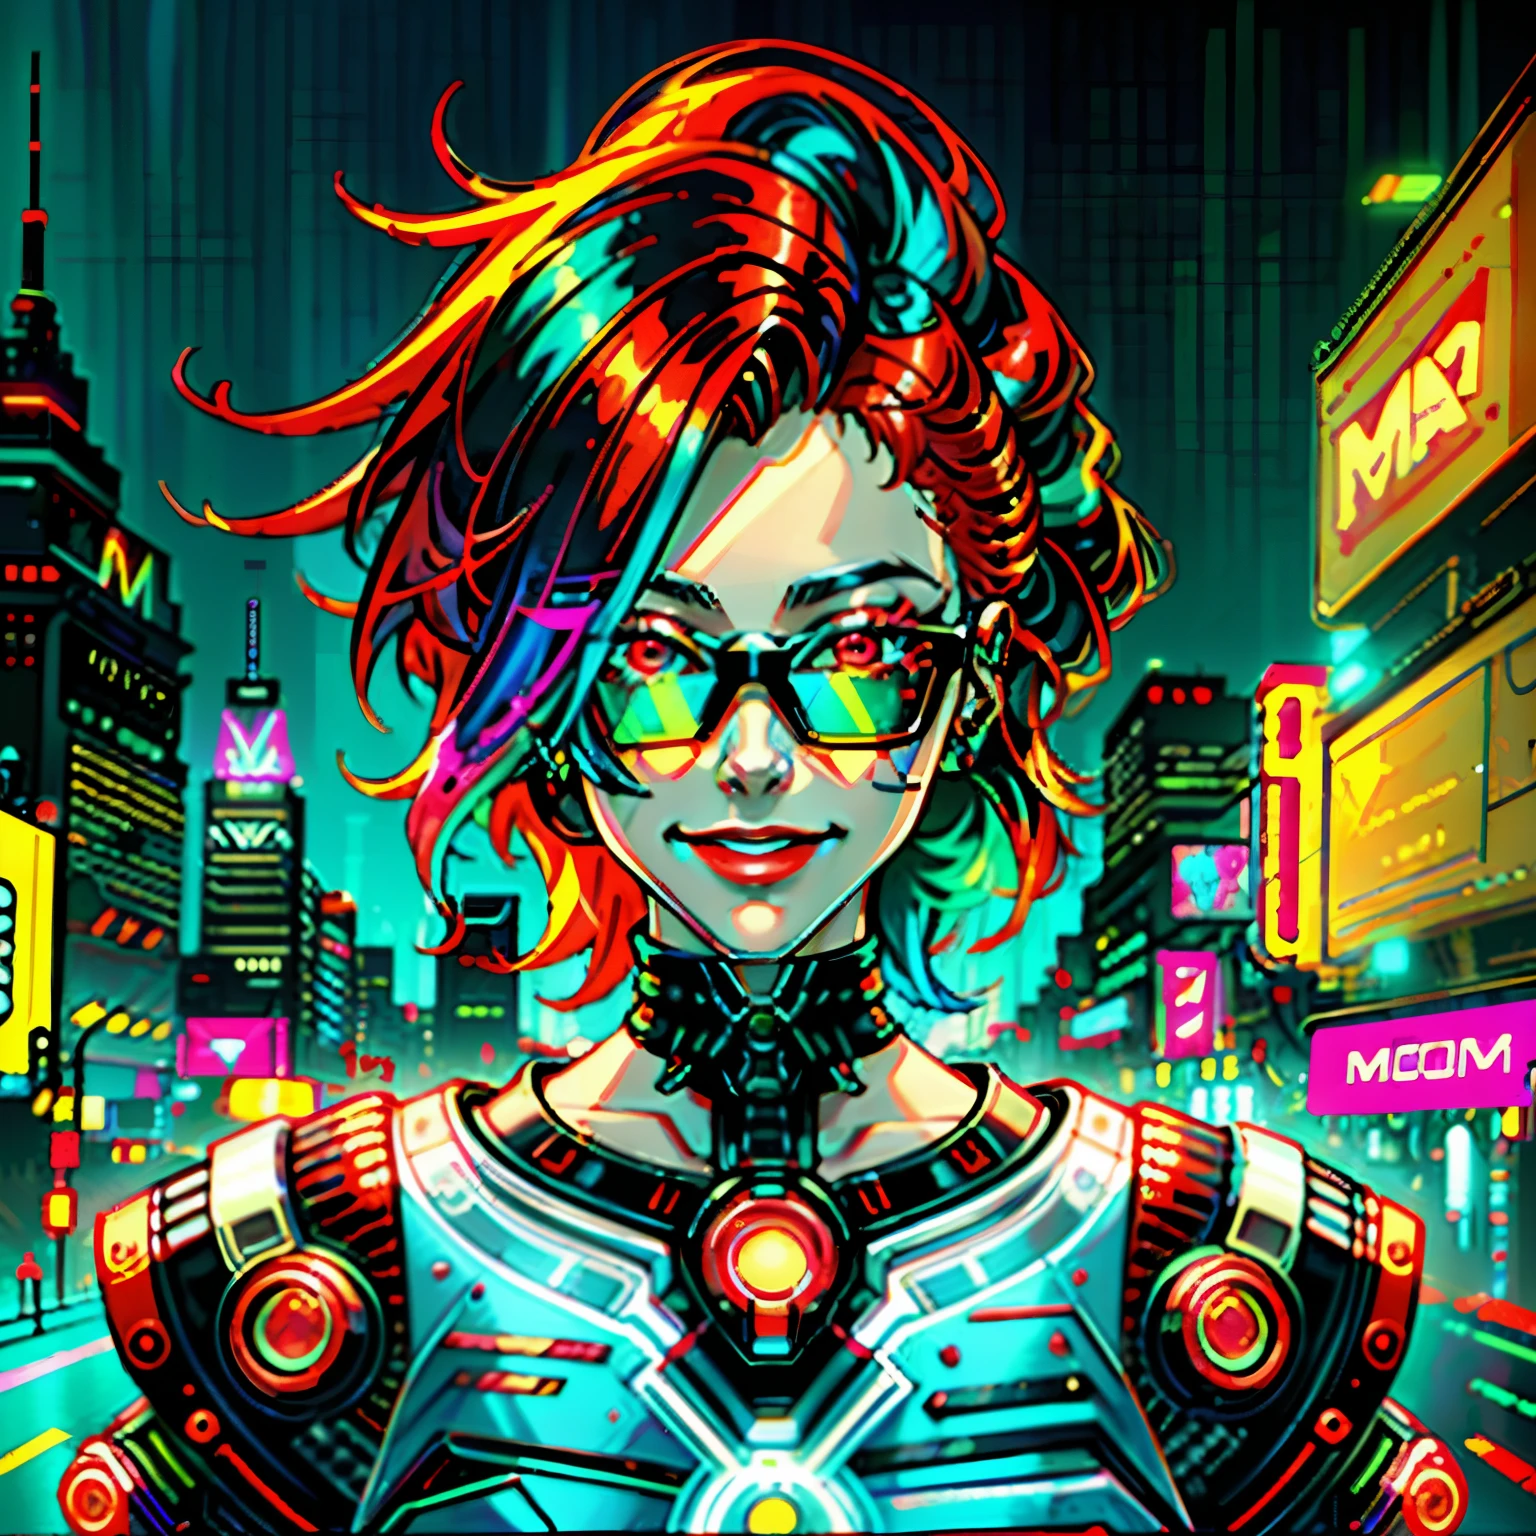 لوحة رقمية لامرأة ذات شعر أحمر, فن السايبربانك, com.synthwave, مستقبلية, نيون, glowing نيون, يبتسم, يرتدي نظارات ملونة على طراز السايبربانك, قريب من الوجه